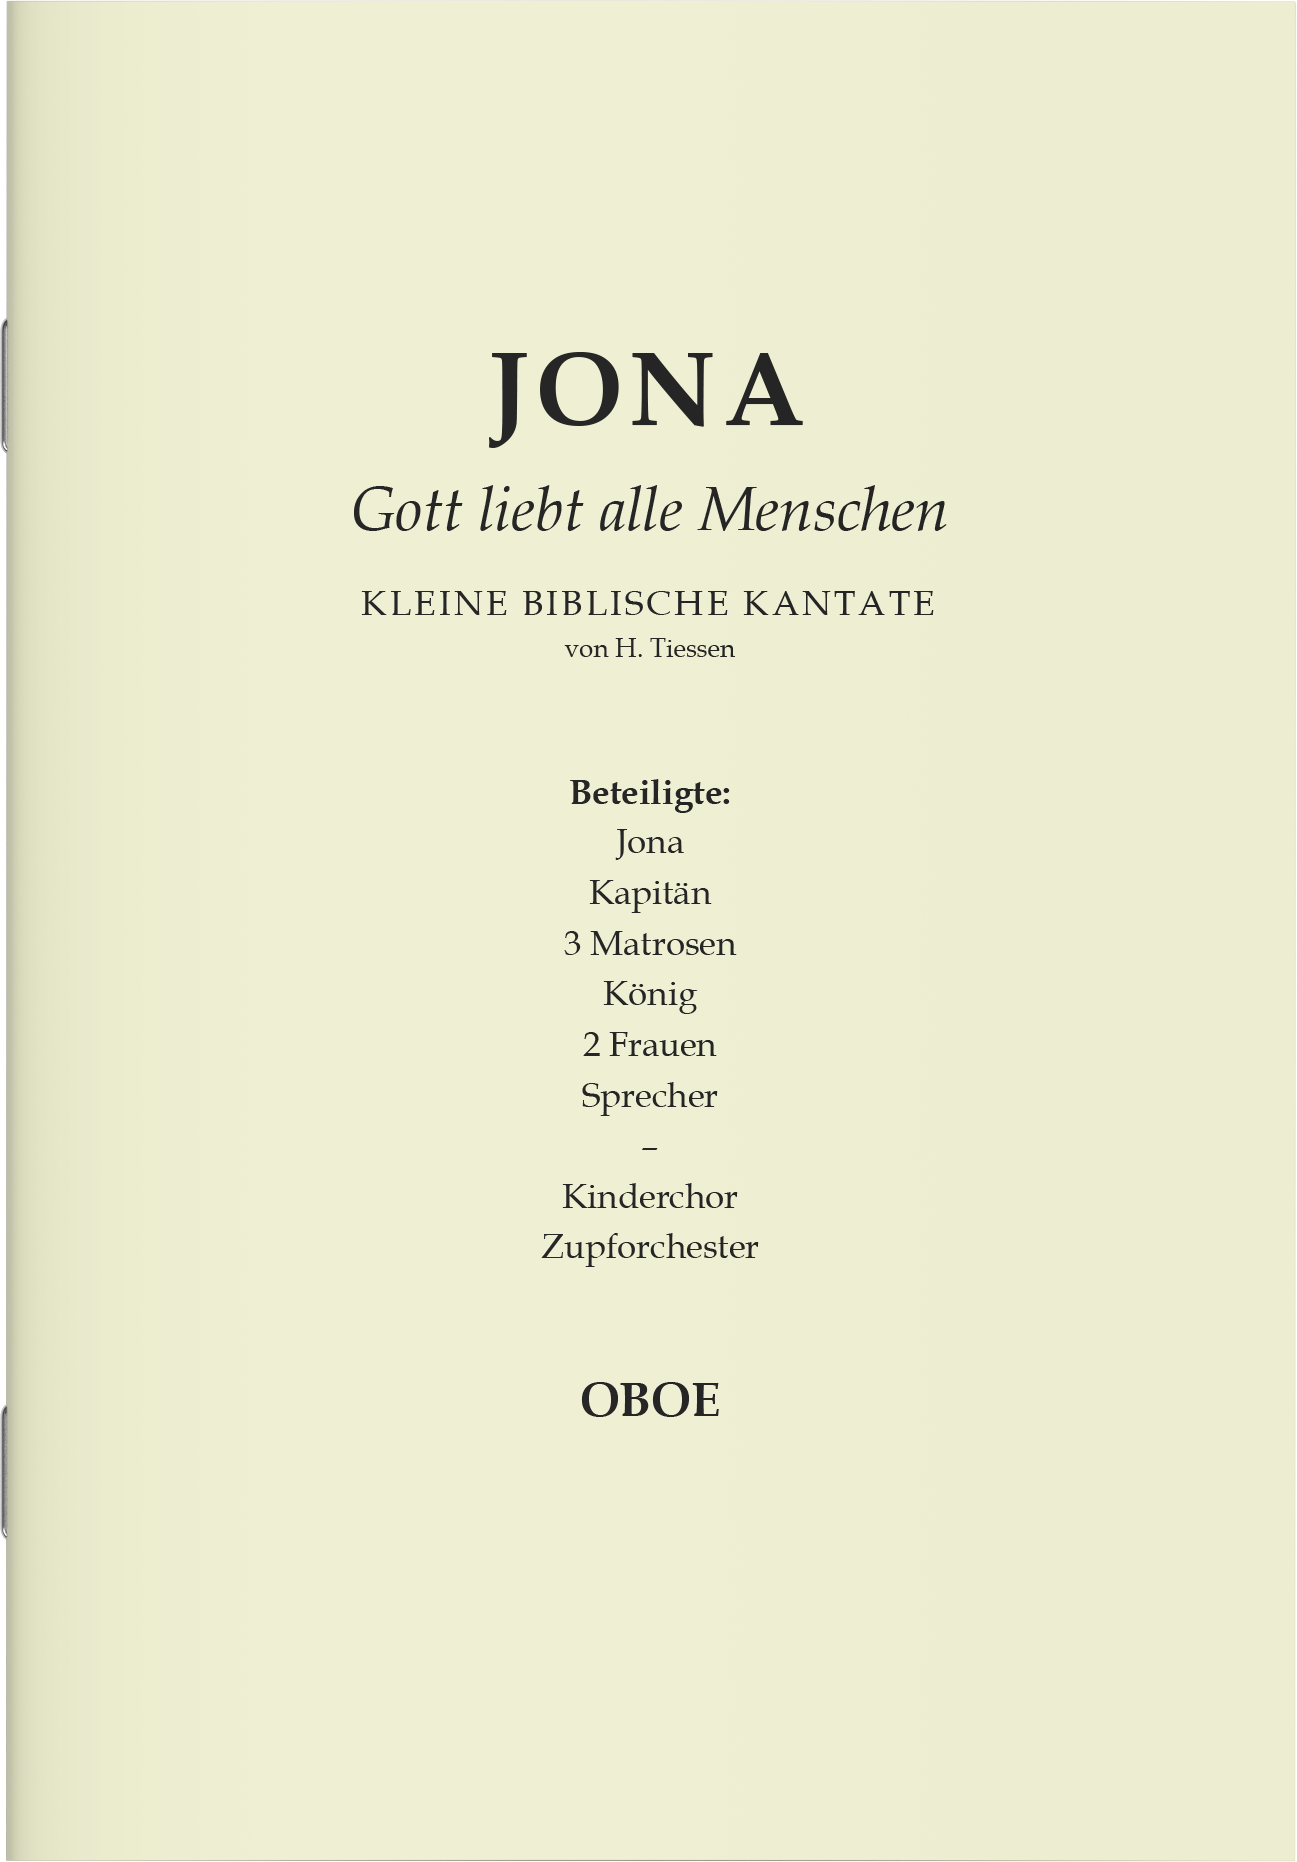 Partitur - Jona (Oboe)